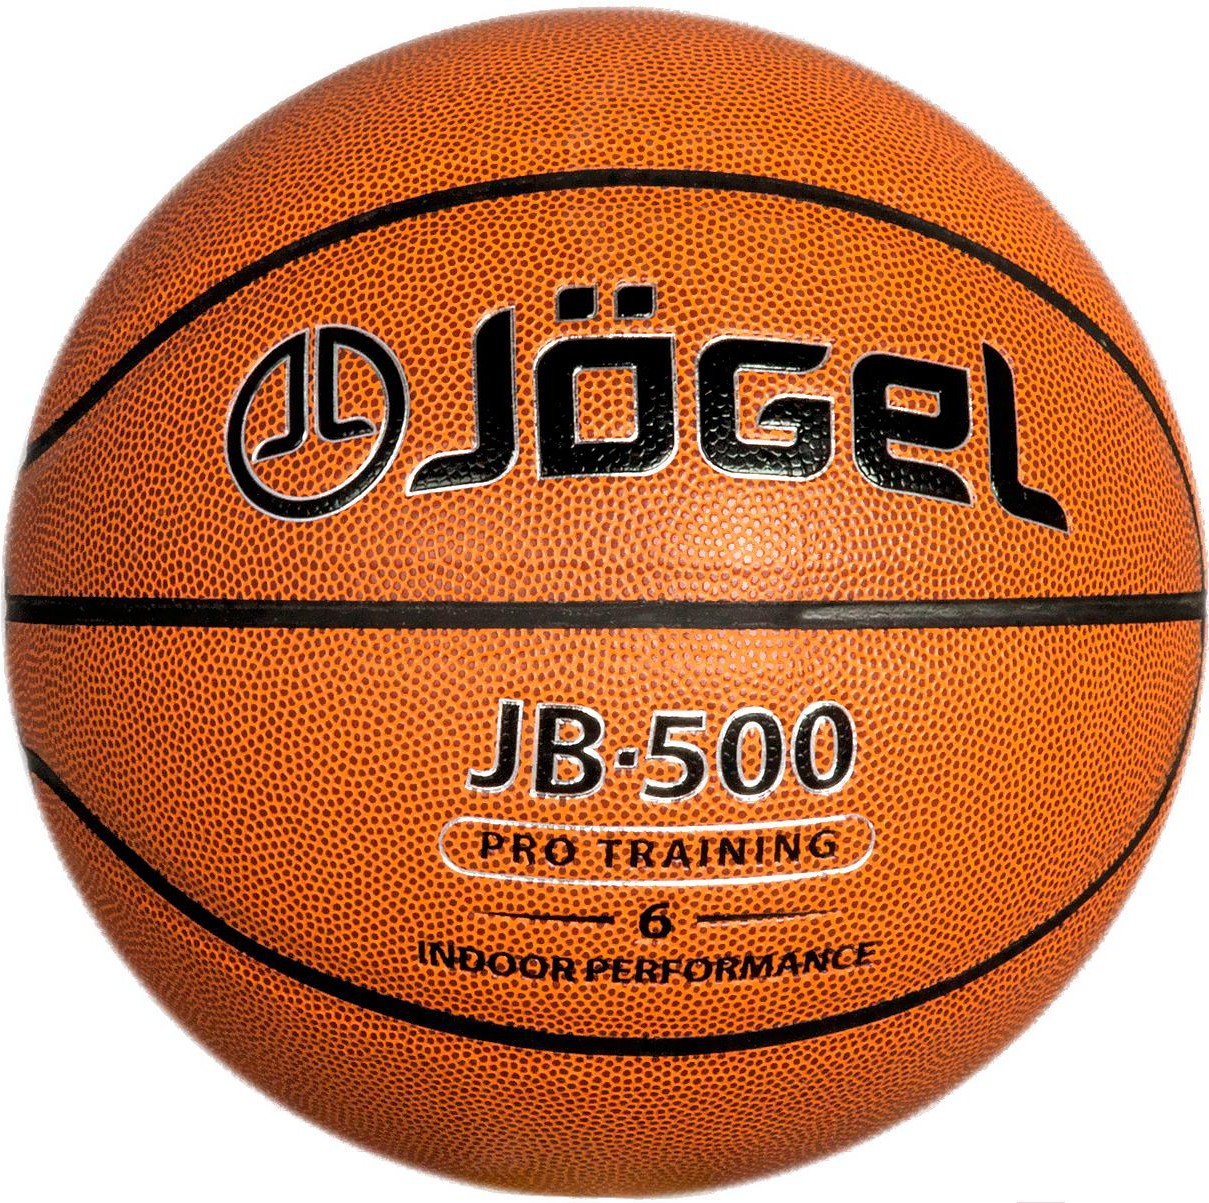 

Баскетбольный мяч Jogel JB-500 (размер 6), Баскетбольный мяч Jogel JB-500 размер 6